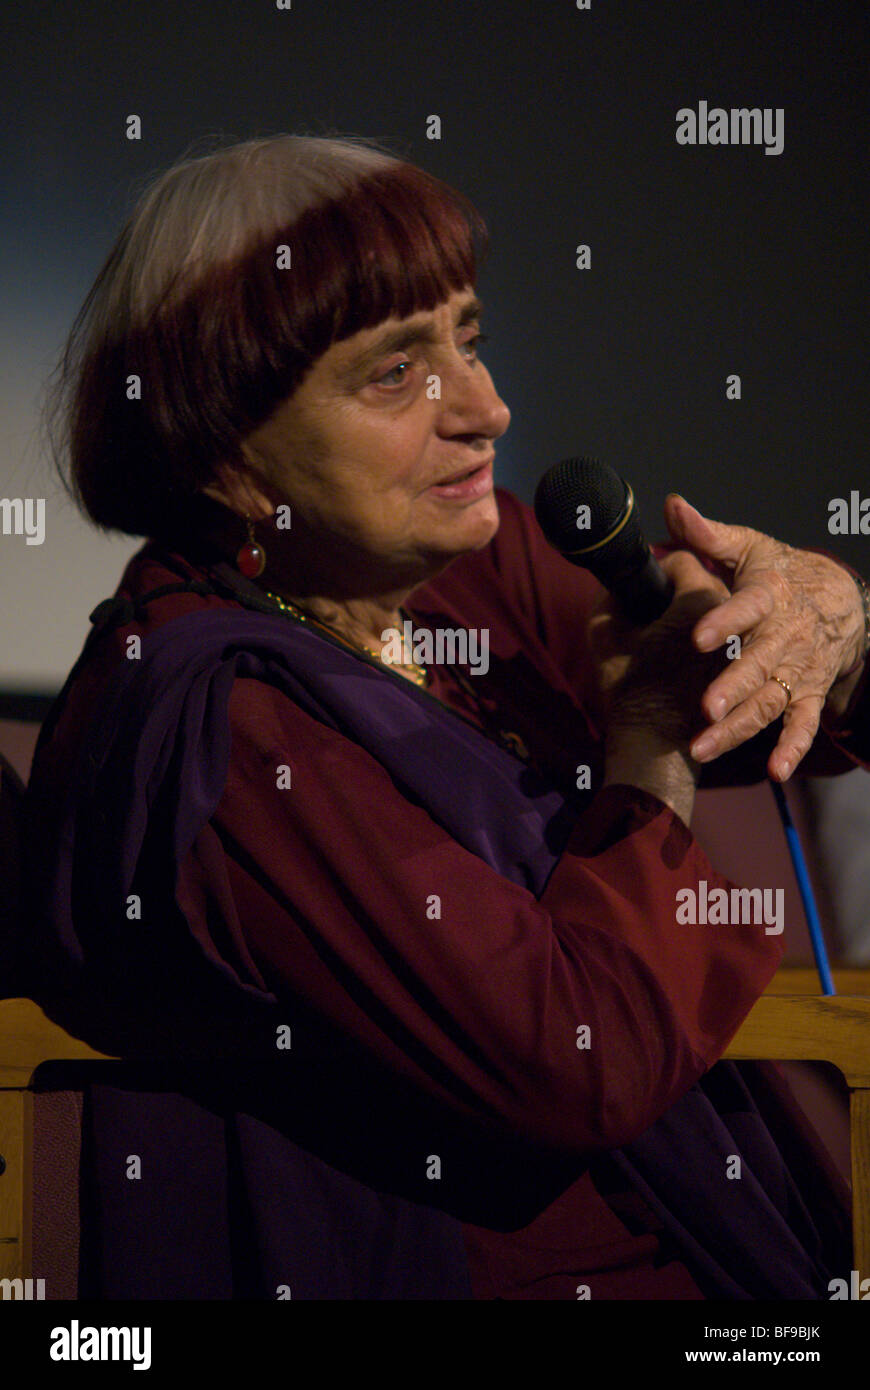 Direktorin Agnes Varda bespricht ihr Film "Les Plages Myrtenbeeren" im Aero Theatre in Santa Monica. 1. Juli 2009. Stockfoto